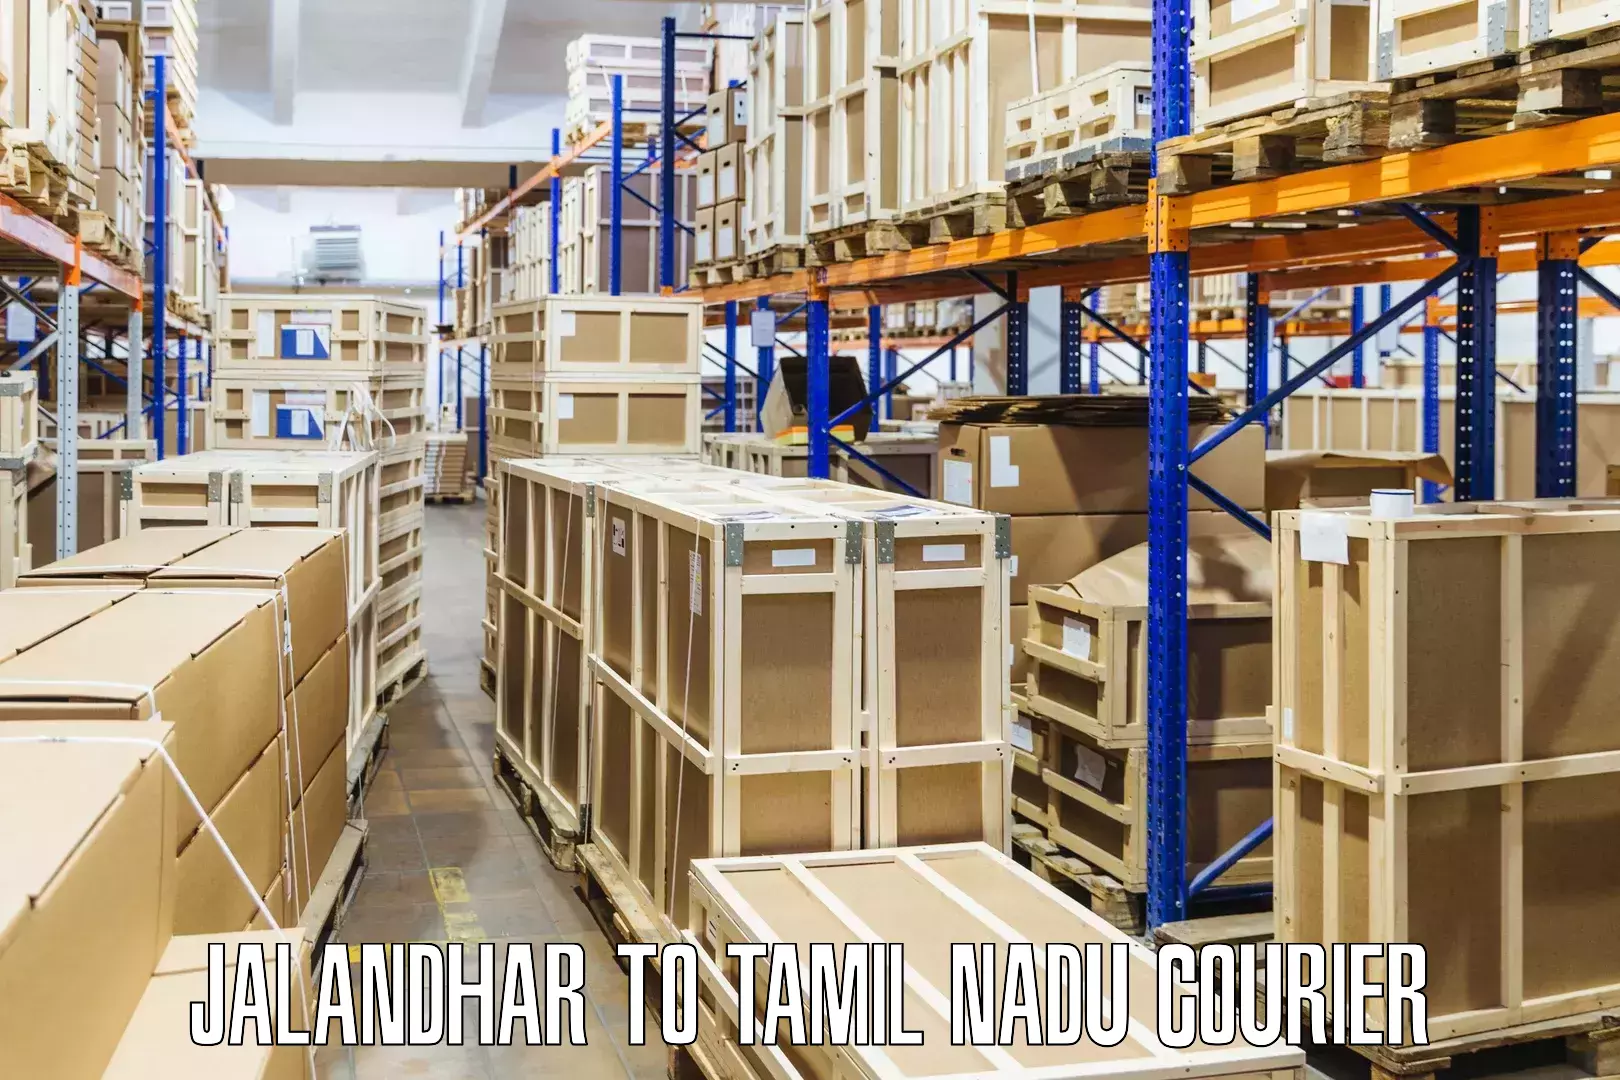 Seamless shipping experience Jalandhar to Nanguneri